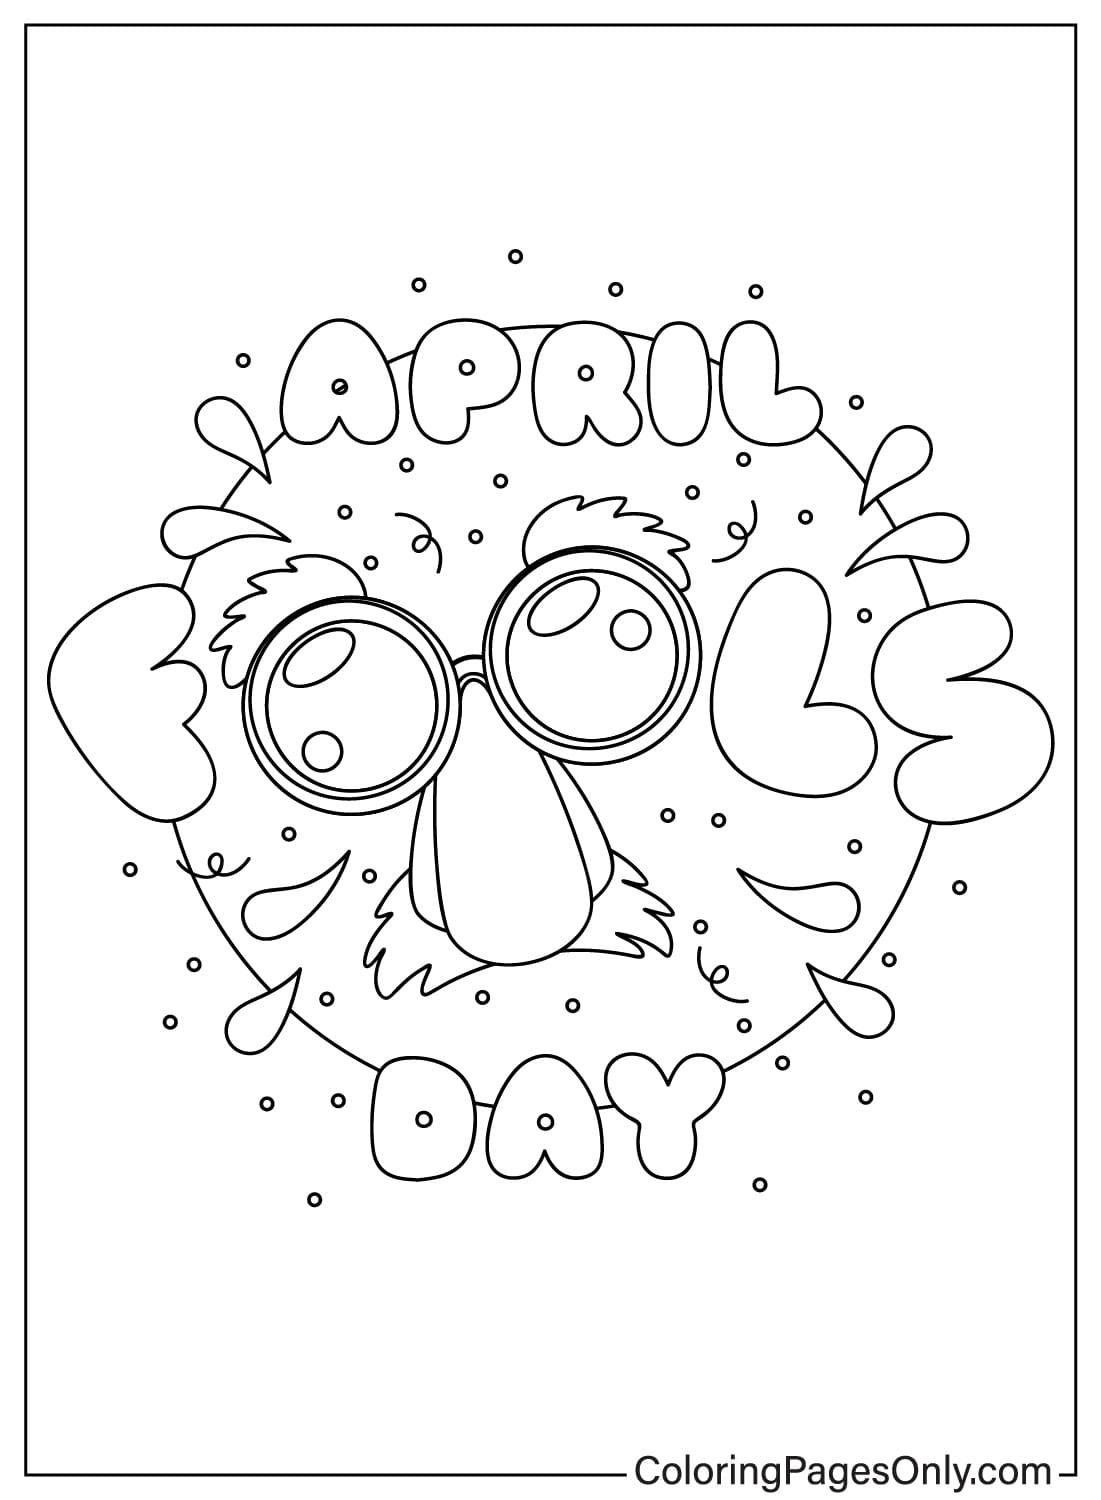 April Fool's Day kleurplaat van April Fool's Day